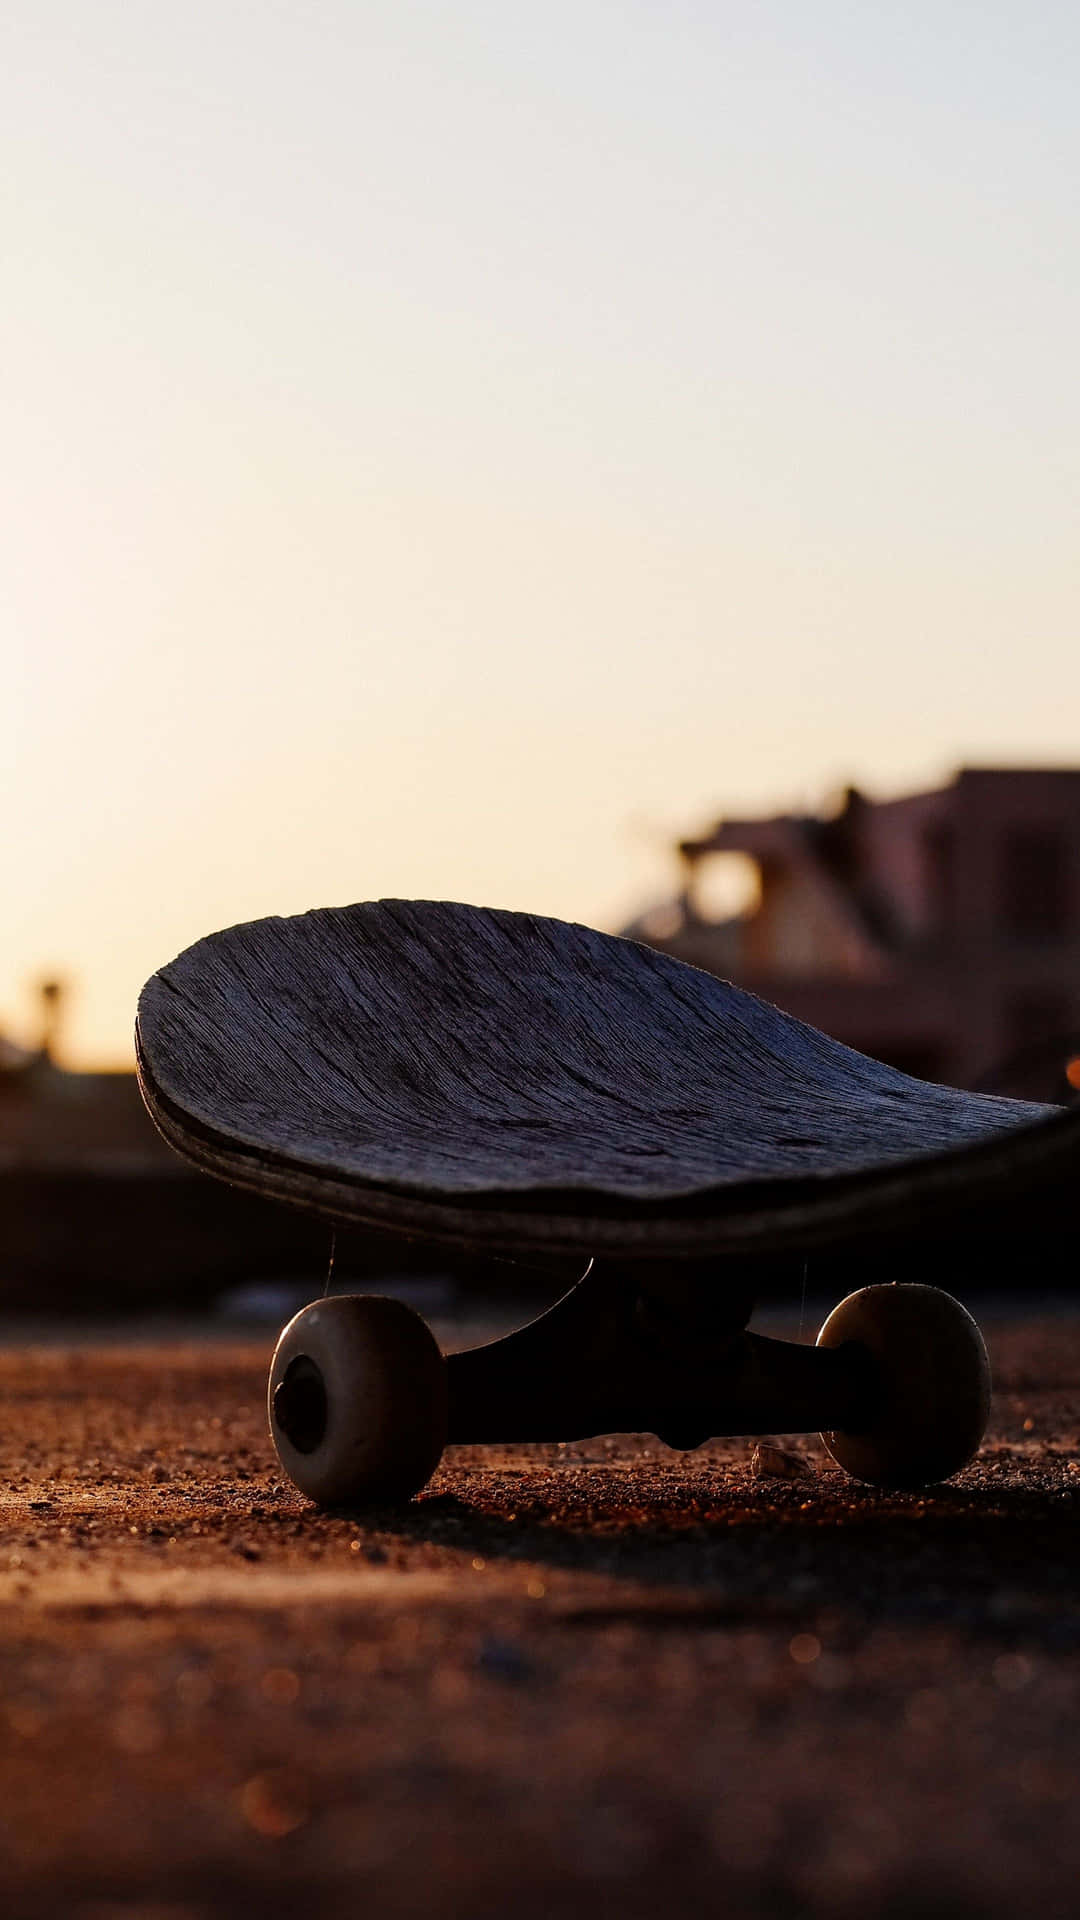 Sunset Skateboard Silhouette.jpg Wallpaper